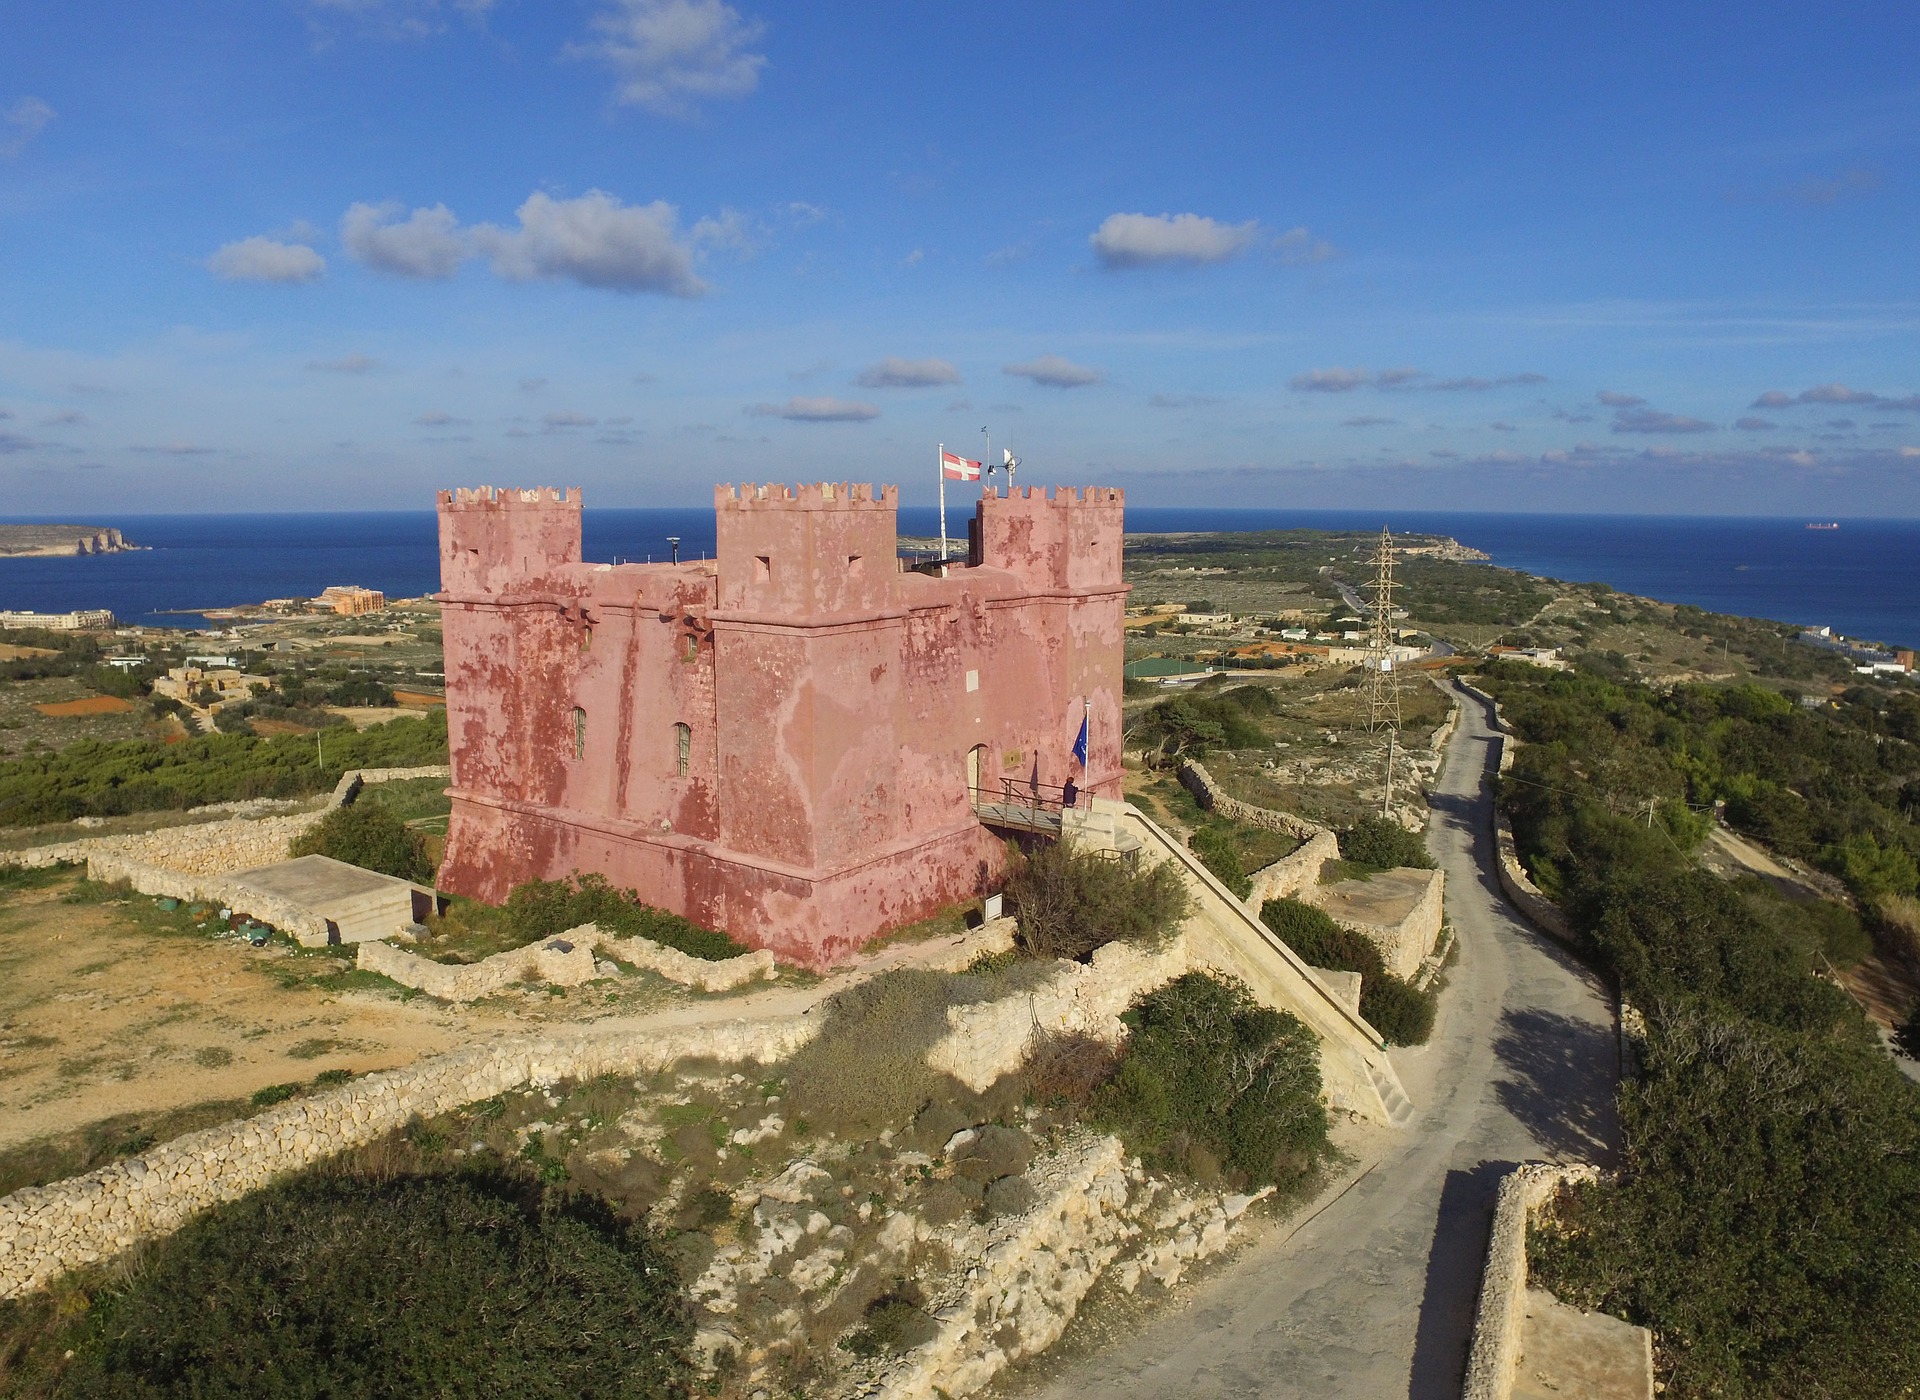 Rote Burg - Sehenswürdigkeiten in Malte entdecken Hotel mit übernachtung reicht.